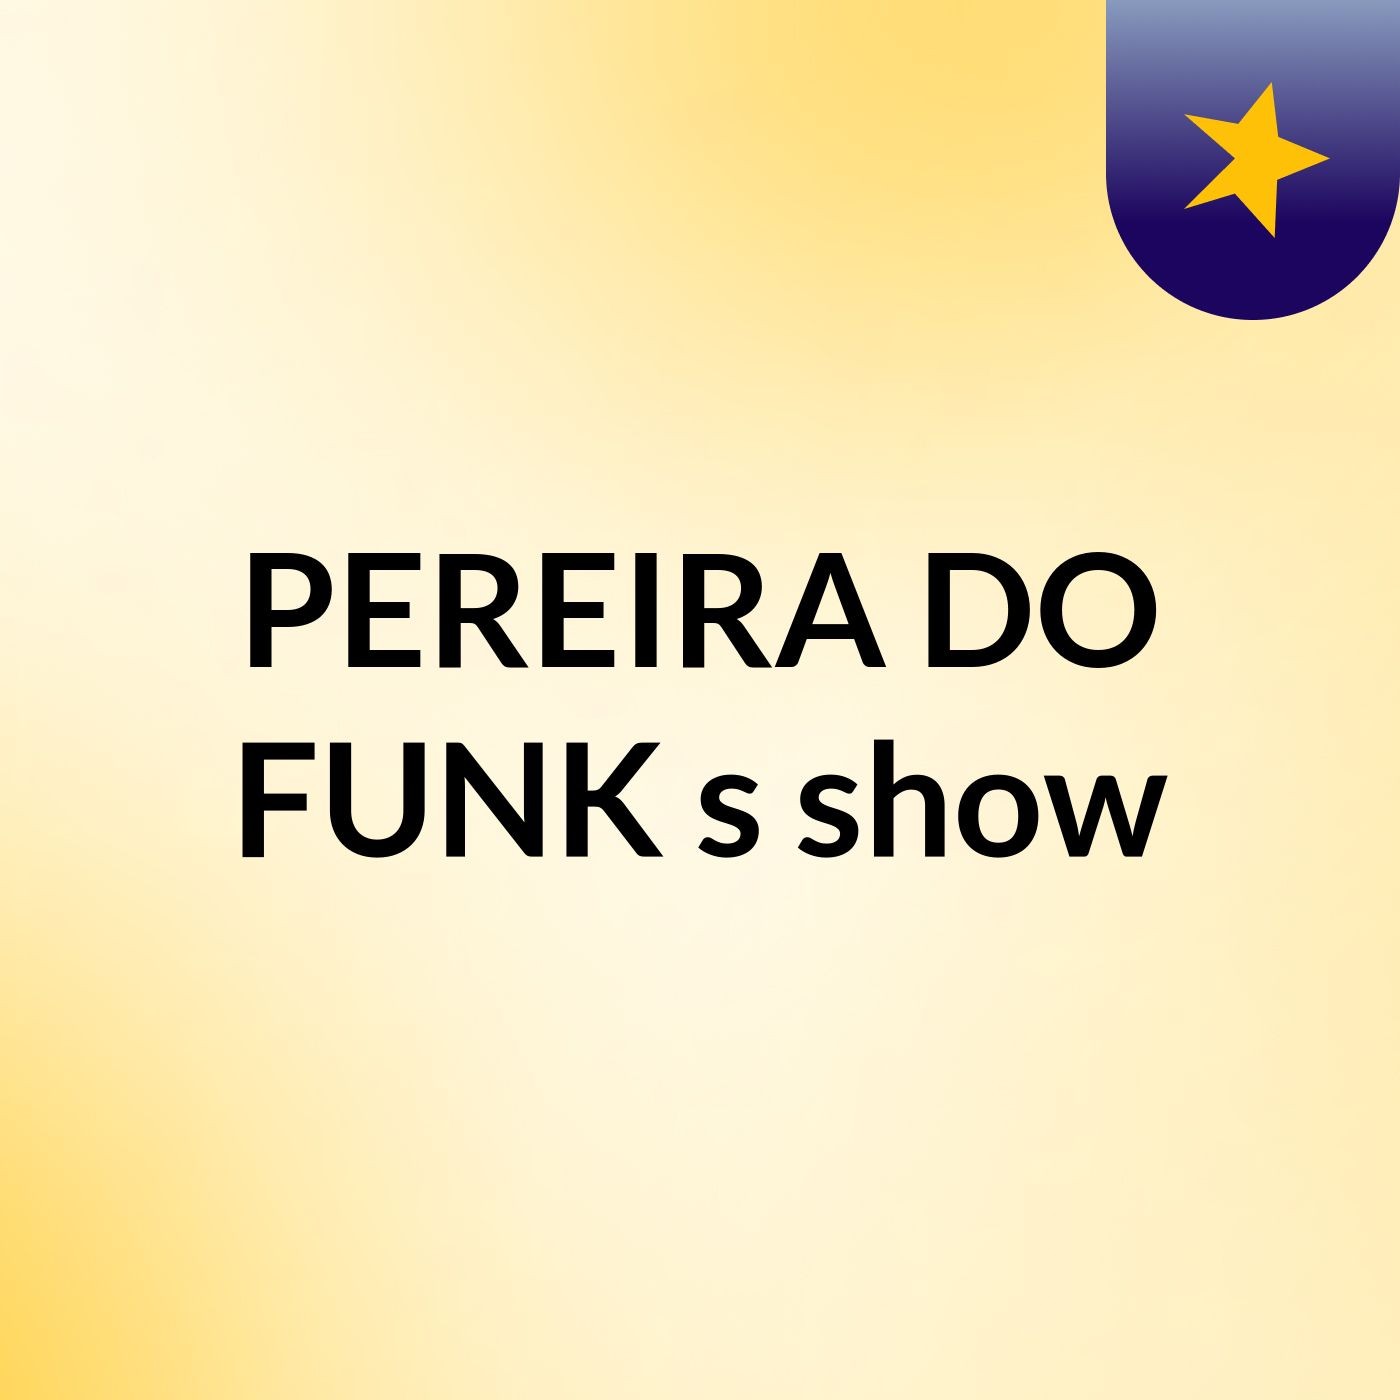 PEREIRA DO FUNK's show